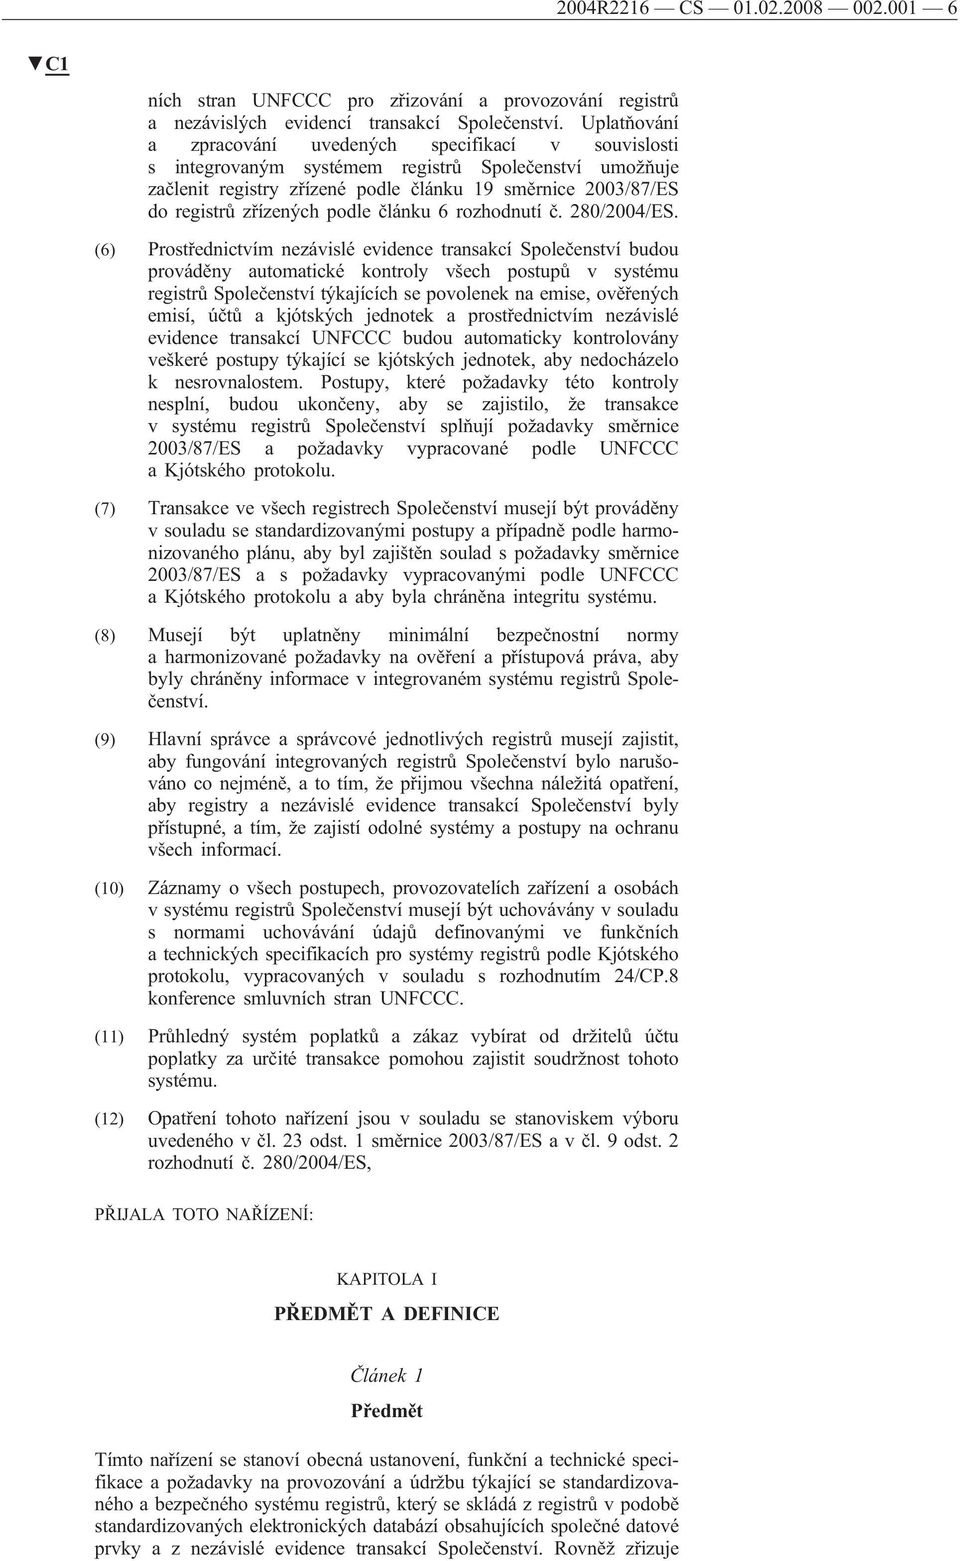 podle článku 6 rozhodnutí č. 280/2004/ES.